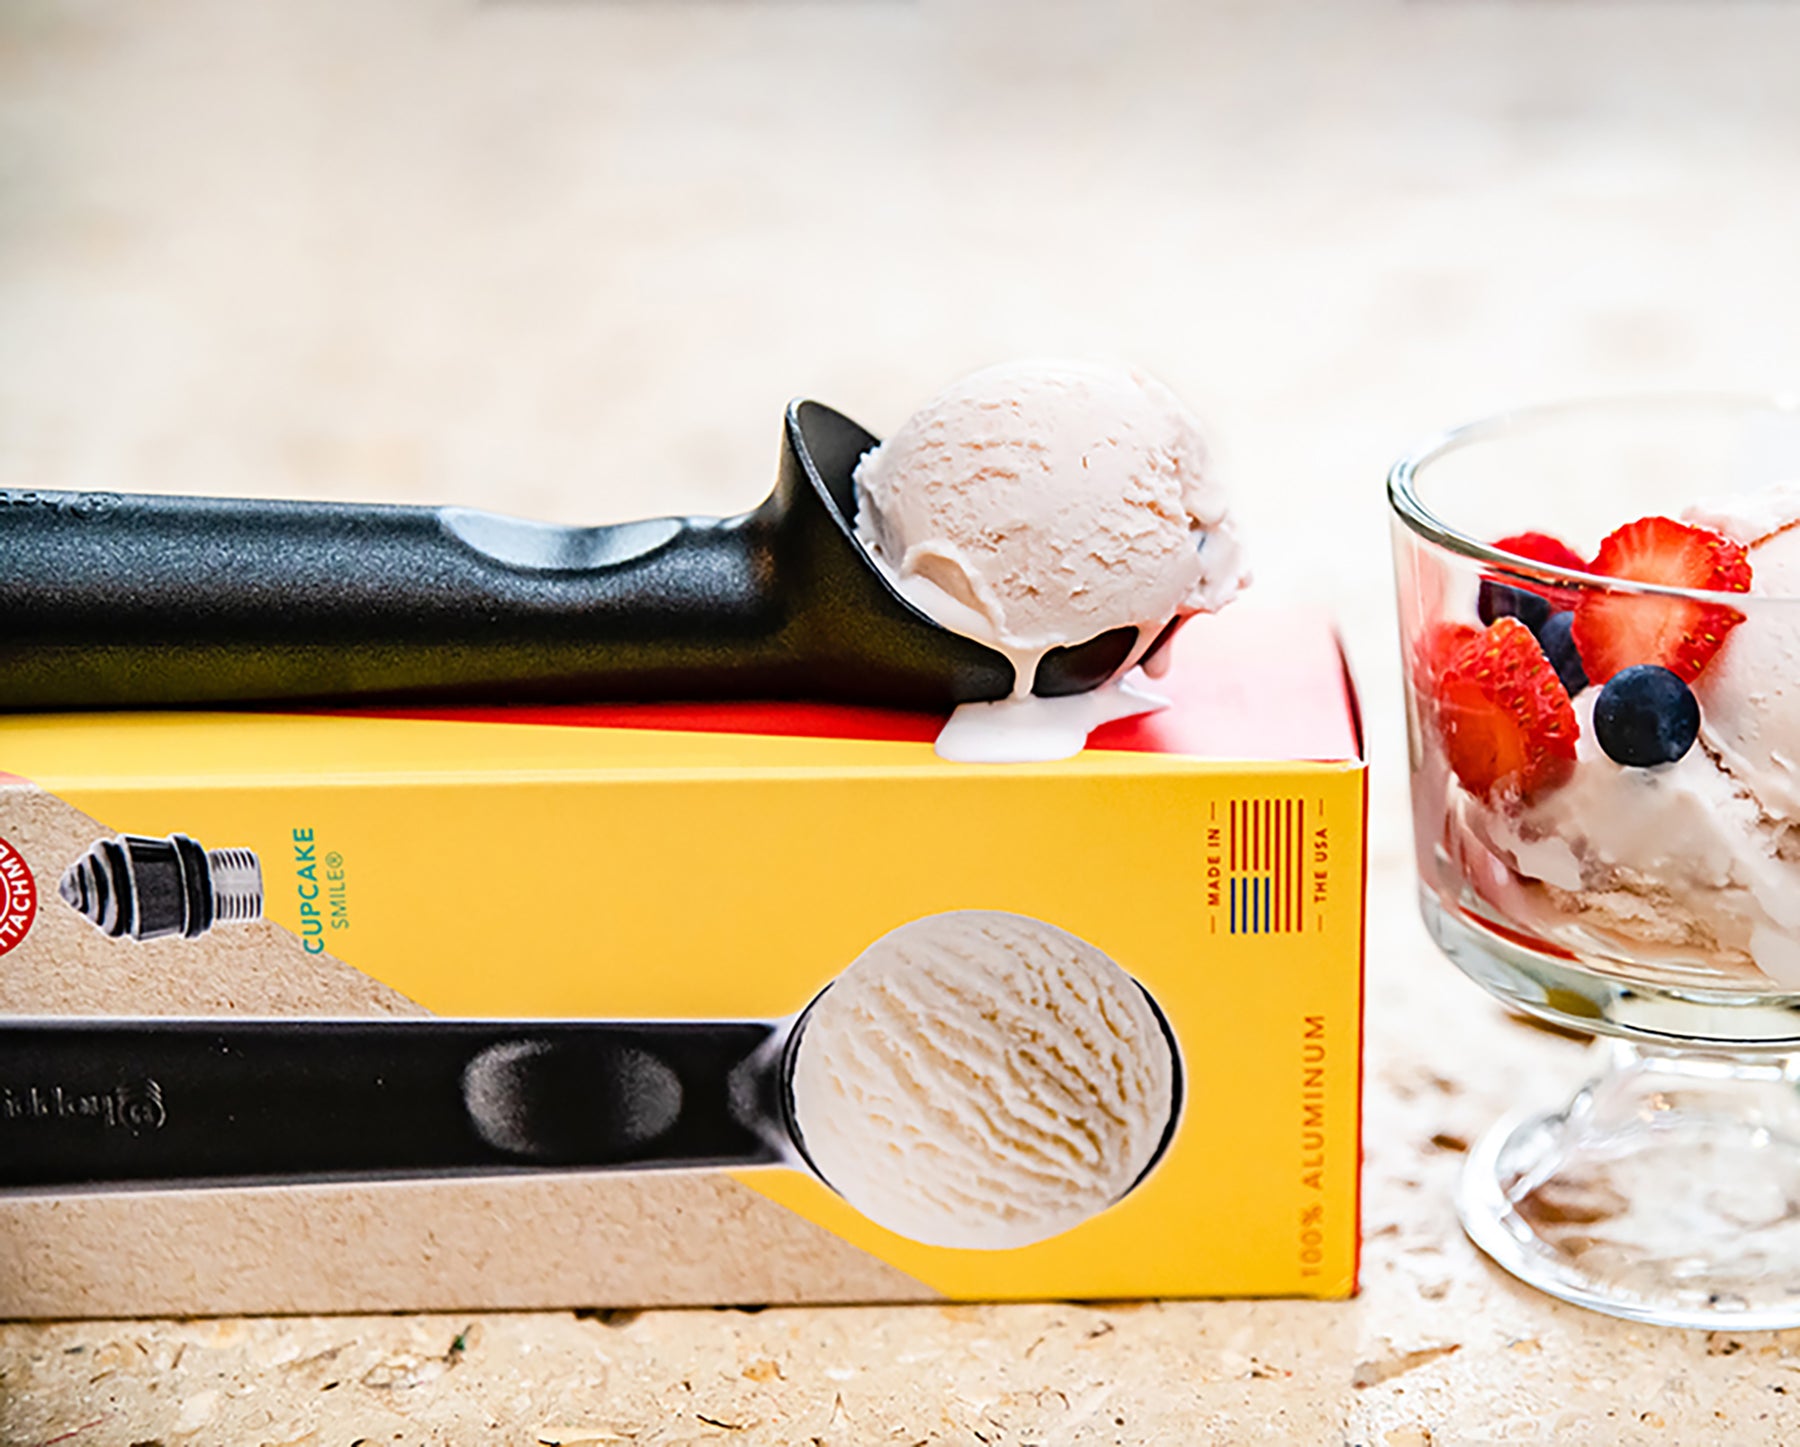 Happy Ice Cream Scoop + Cupcake Smile® – Happyware Company